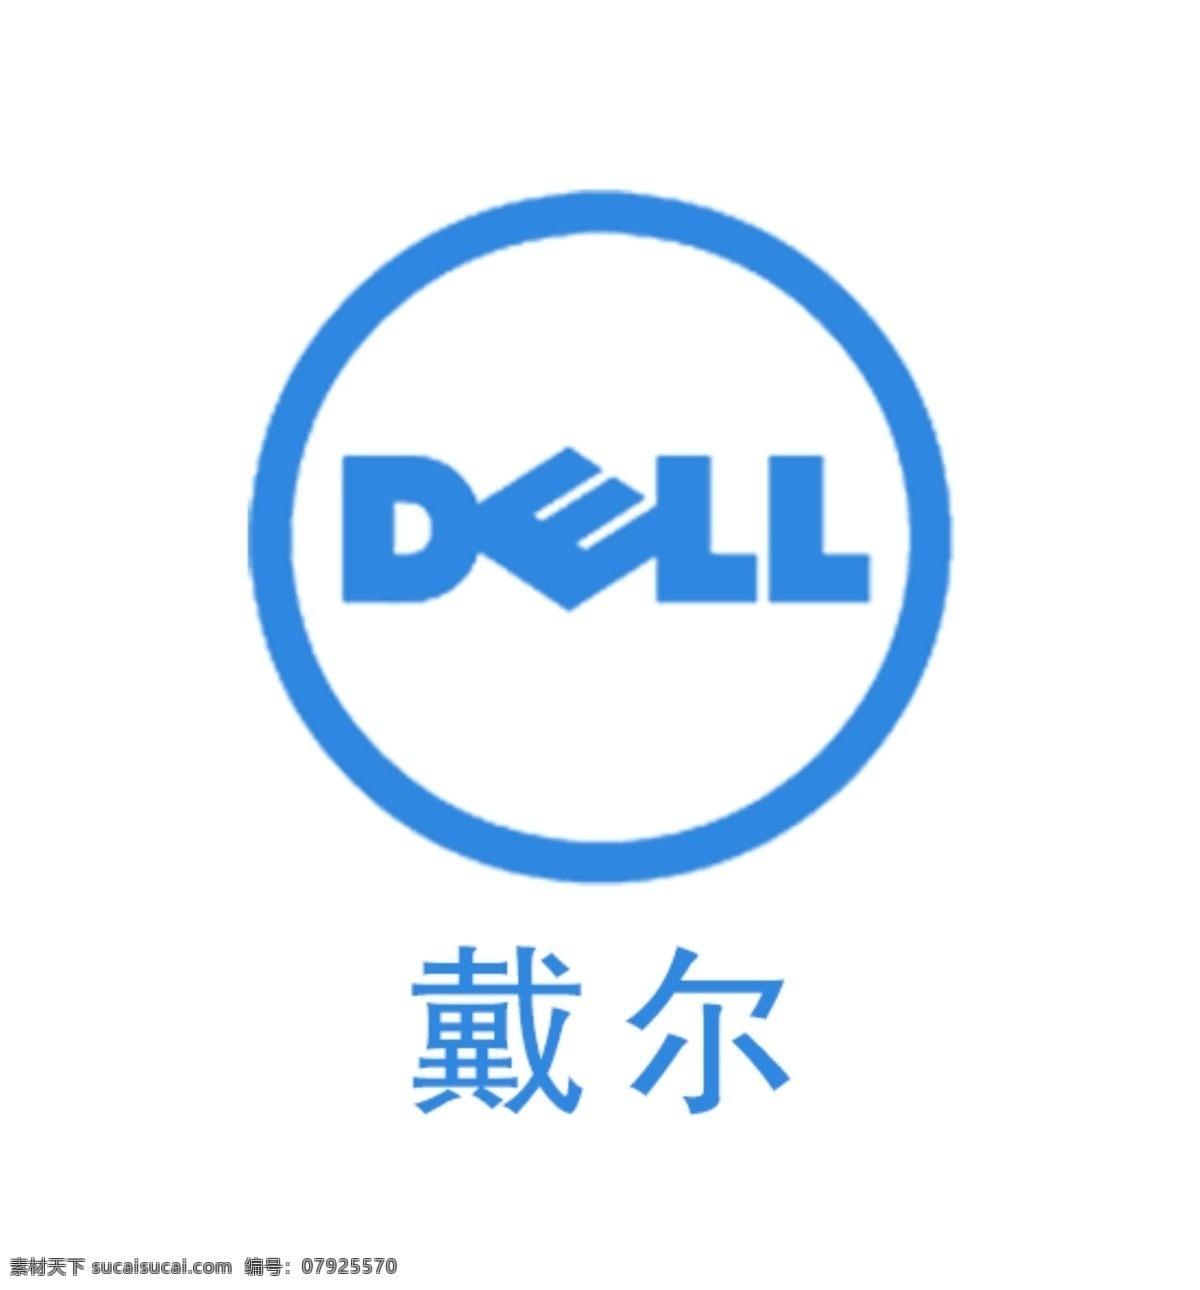 戴尔标志 戴尔logo 戴尔电脑标志 戴尔 电脑 logo 戴尔笔记本 电脑品牌标志 品牌 电脑标志 电脑logo